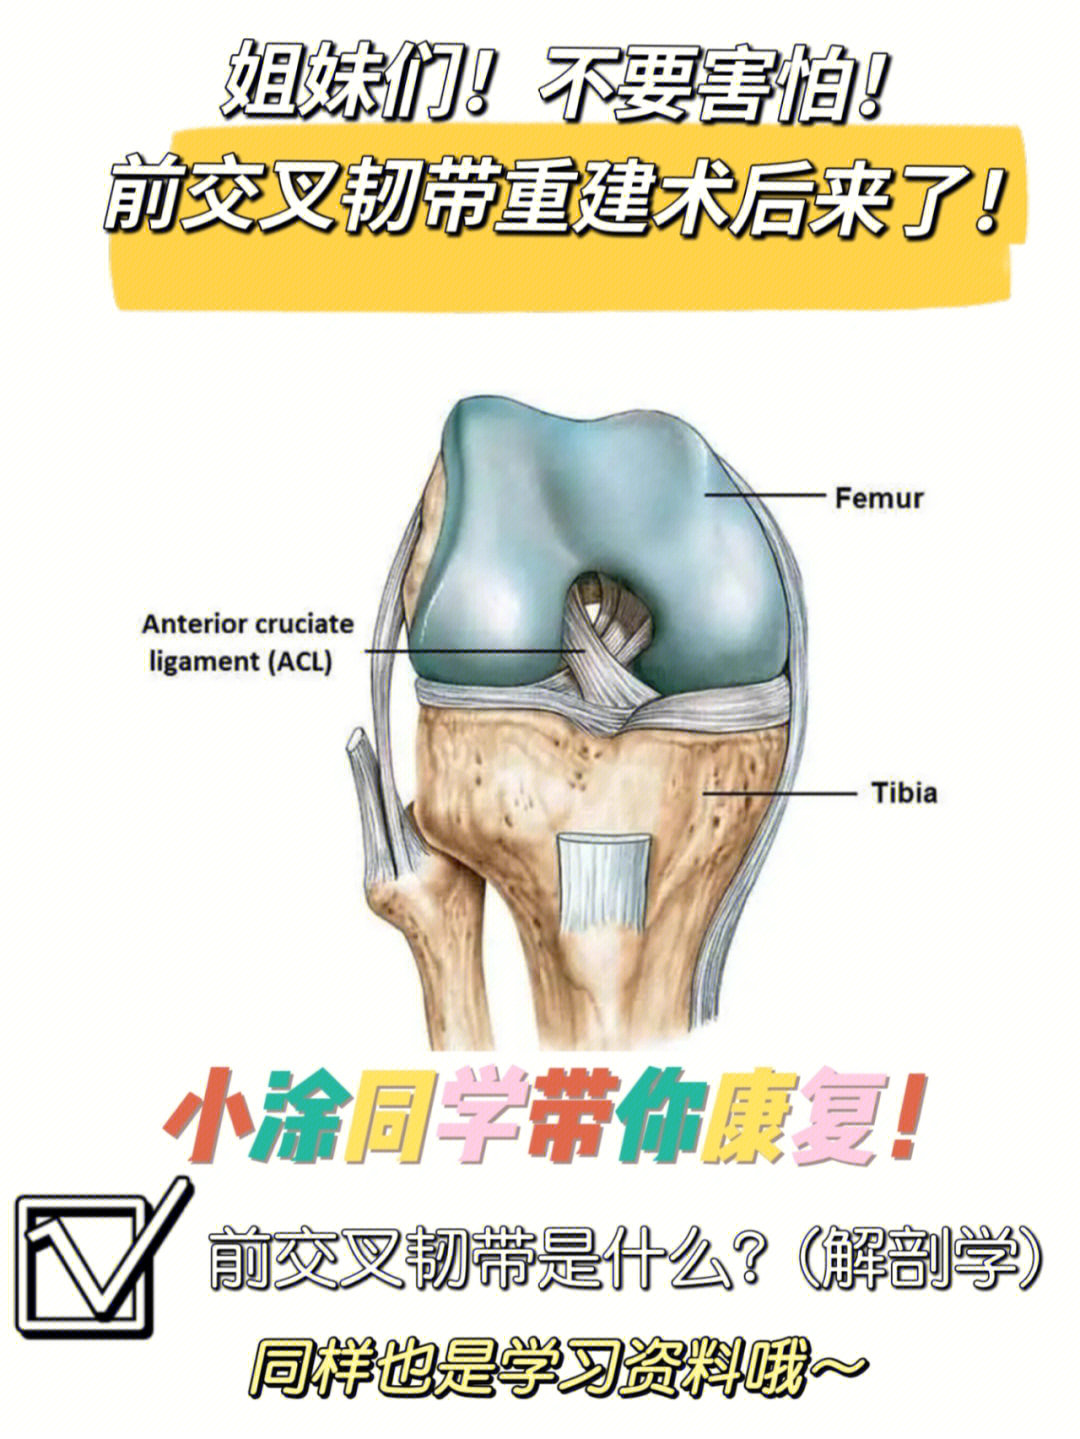 前交叉韧带(acl)的解剖学[一r]位置前交叉韧带起自胫骨髁间隆起的前方